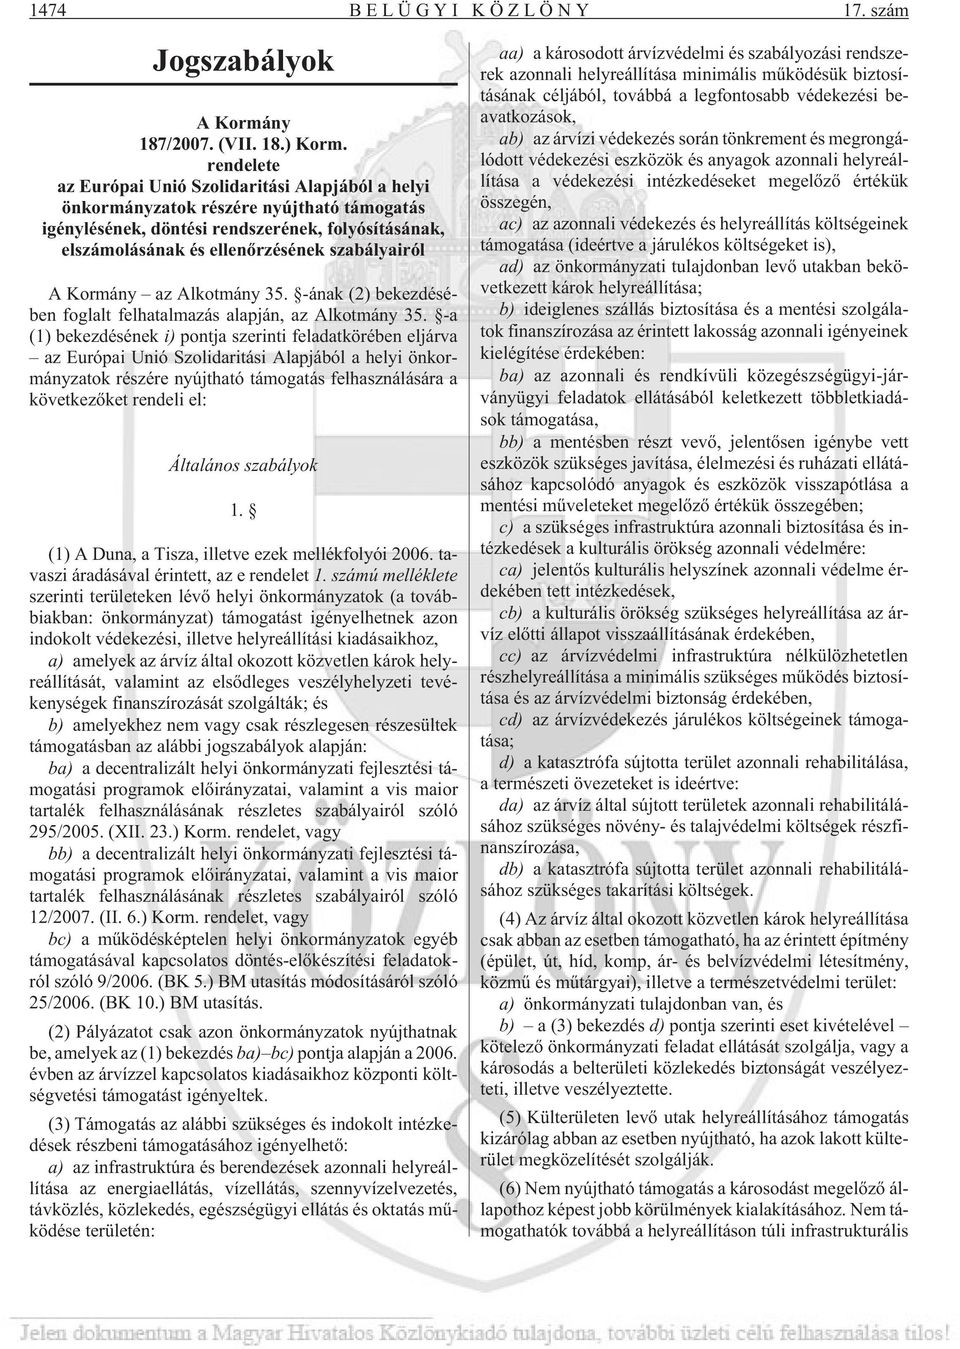 A Kormány az Alkotmány 35. -ának (2) bekezdésében foglalt felhatalmazás alapján, az Alkotmány 35.